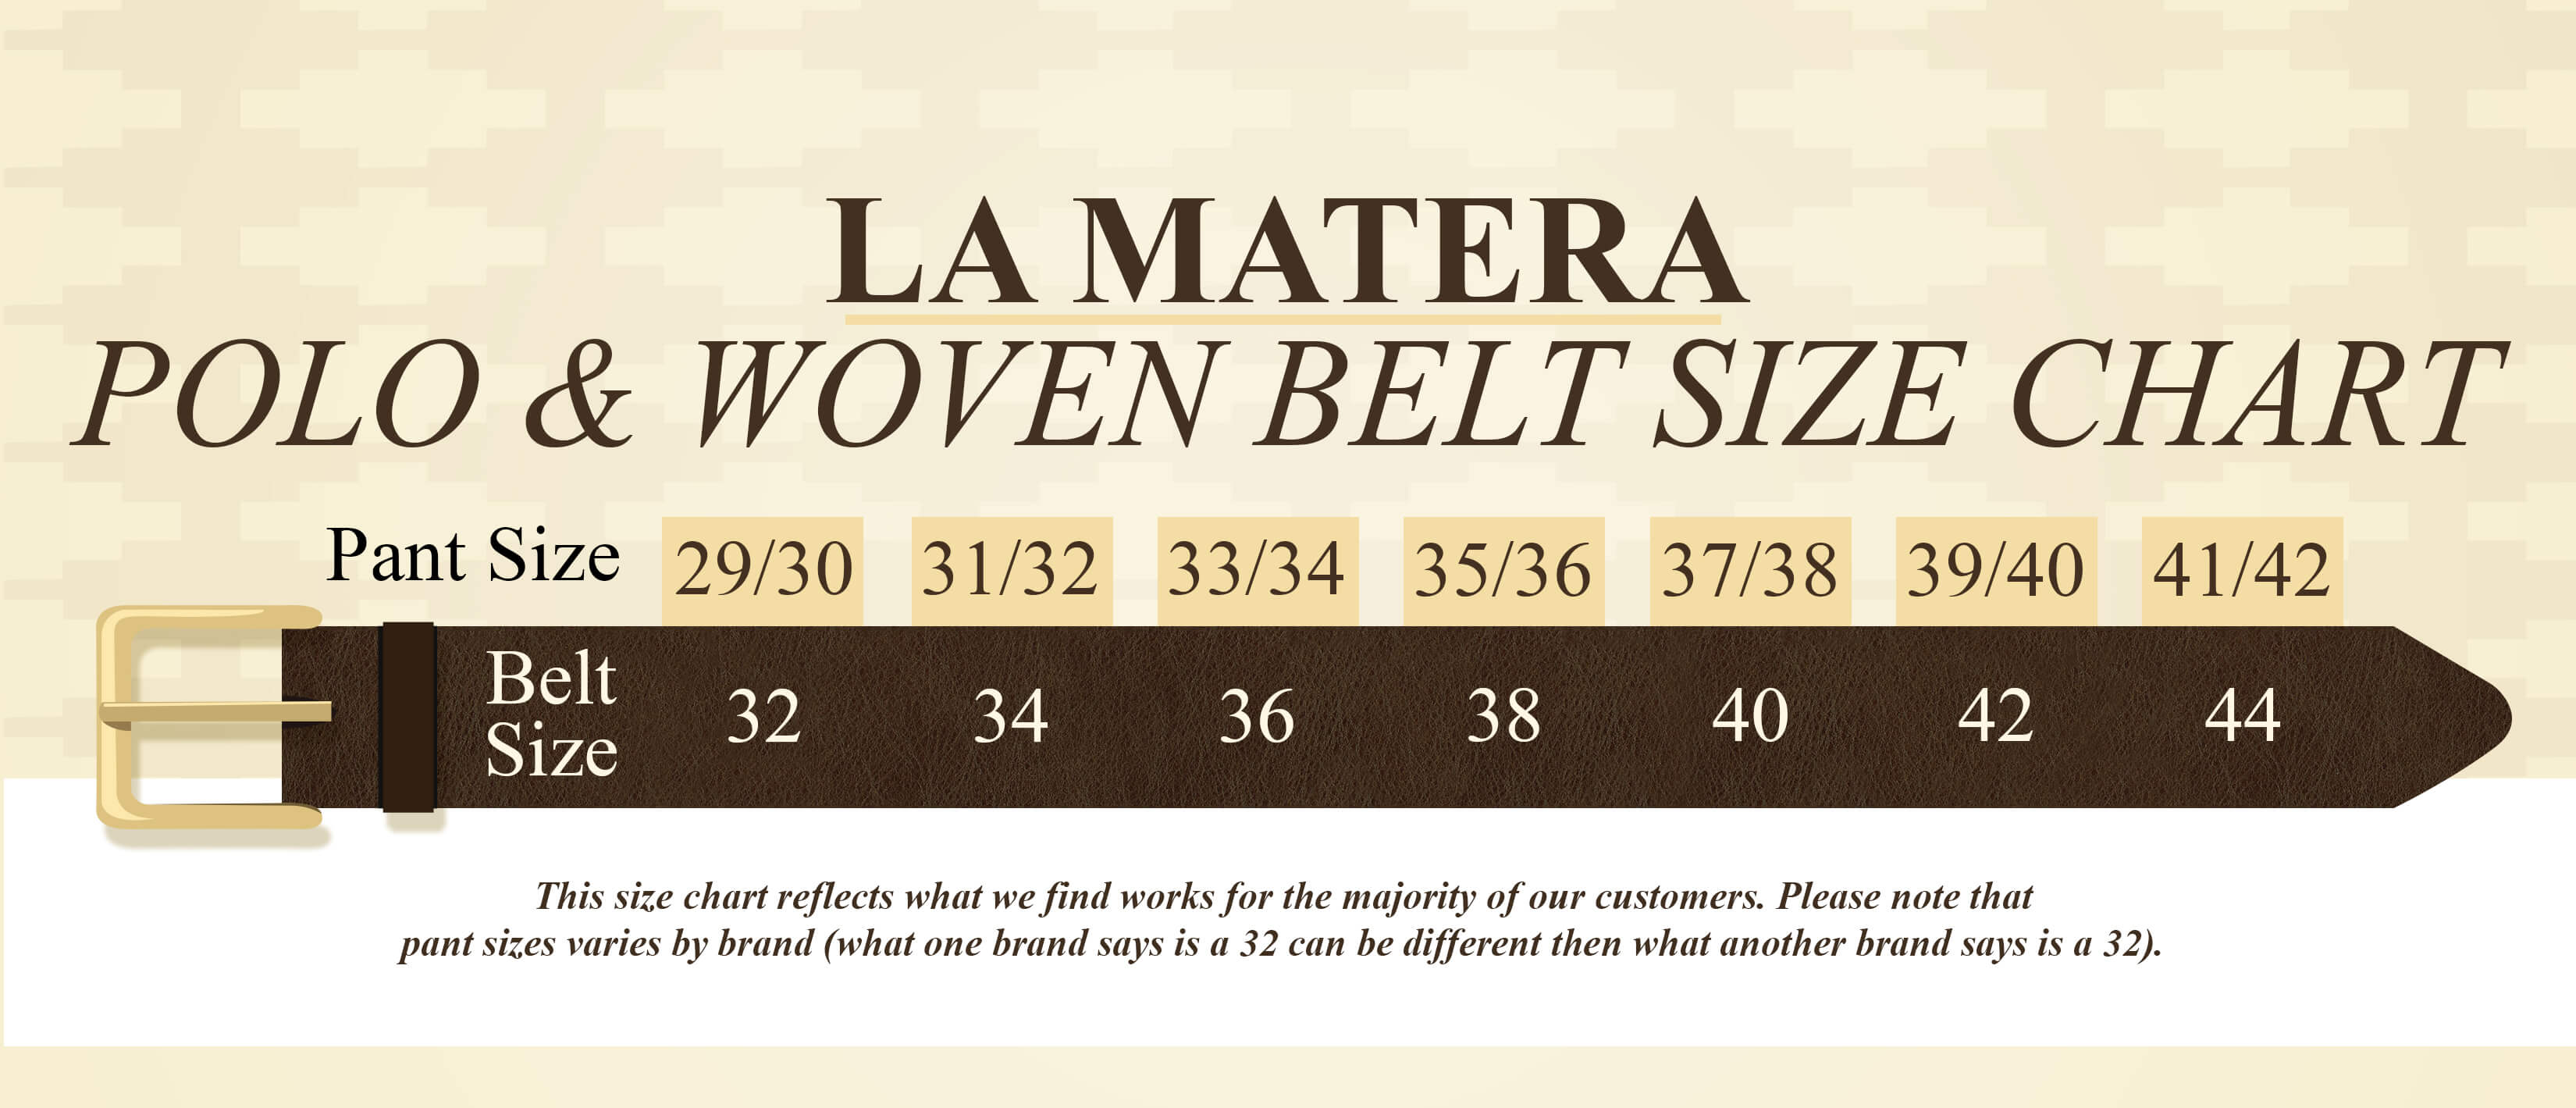 Belt Size Guide – La Matera